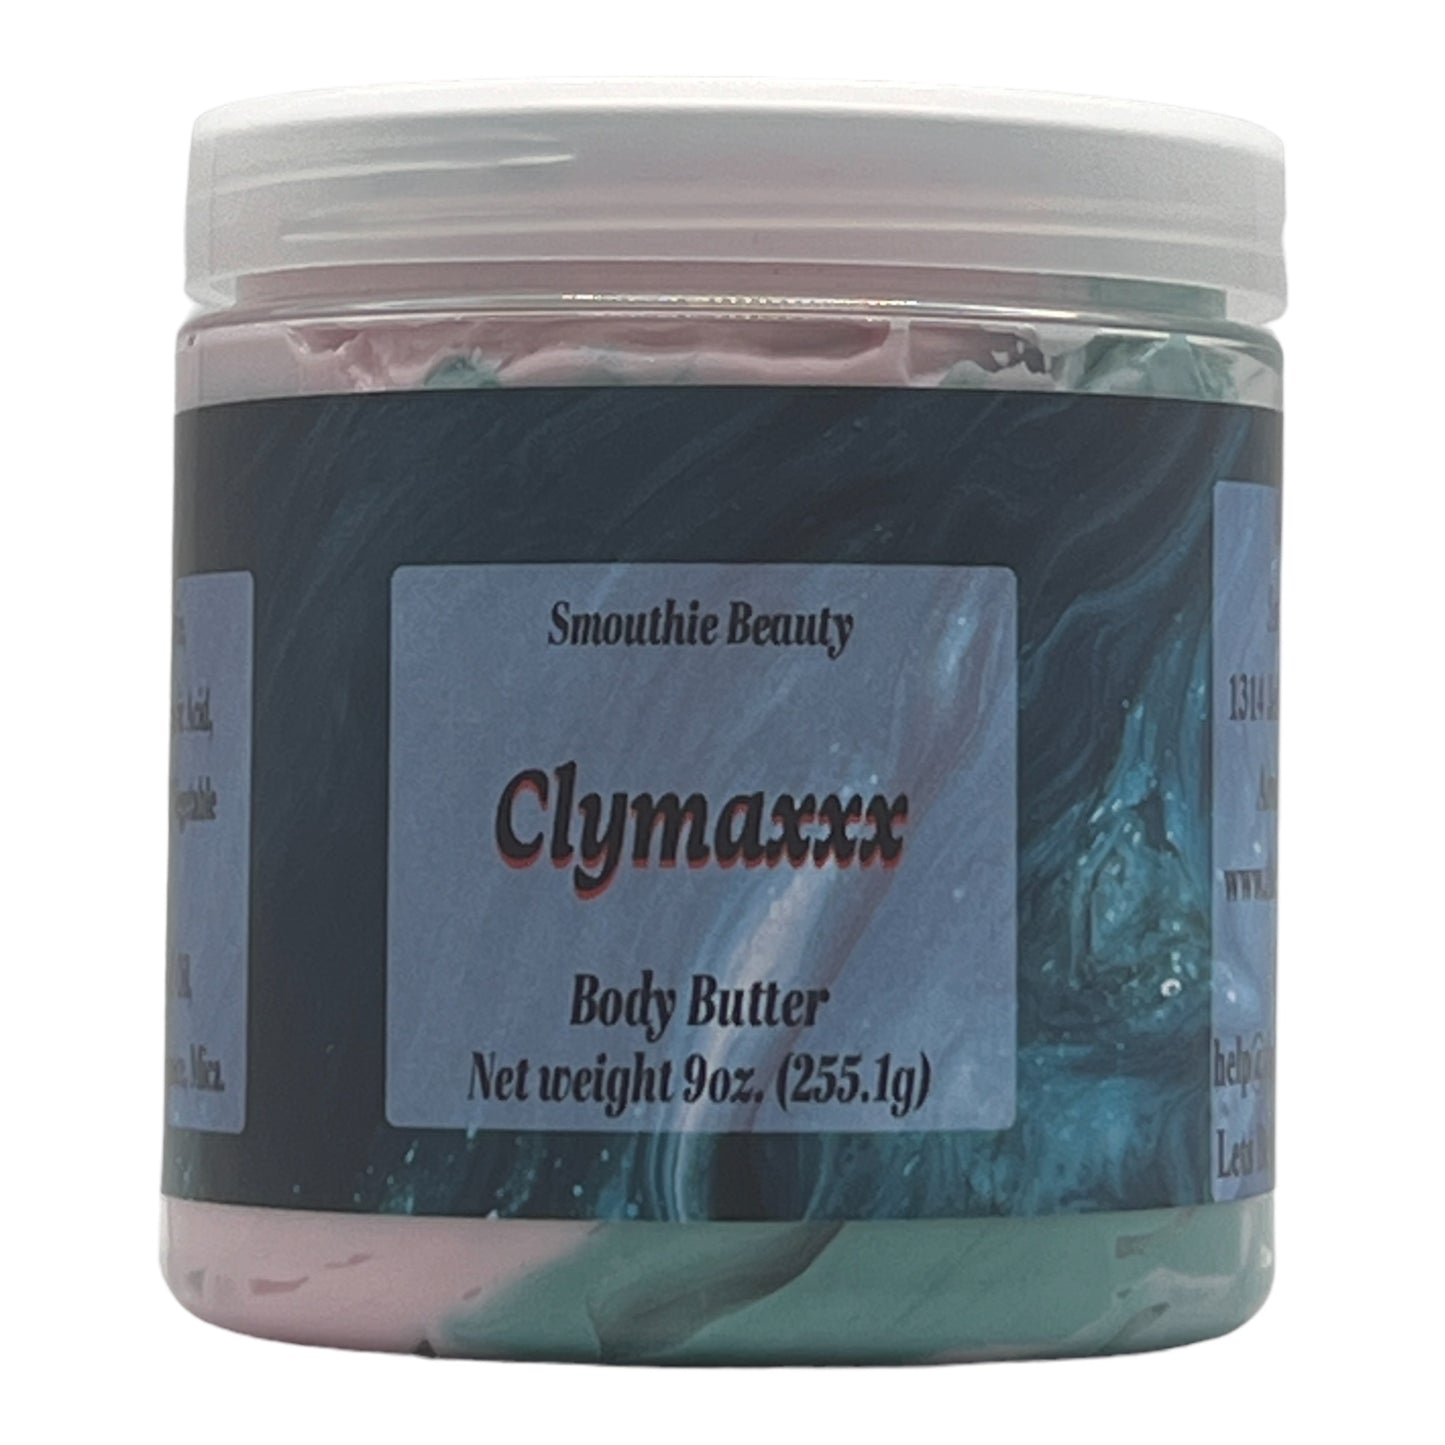 Clymaxxx Body Butter